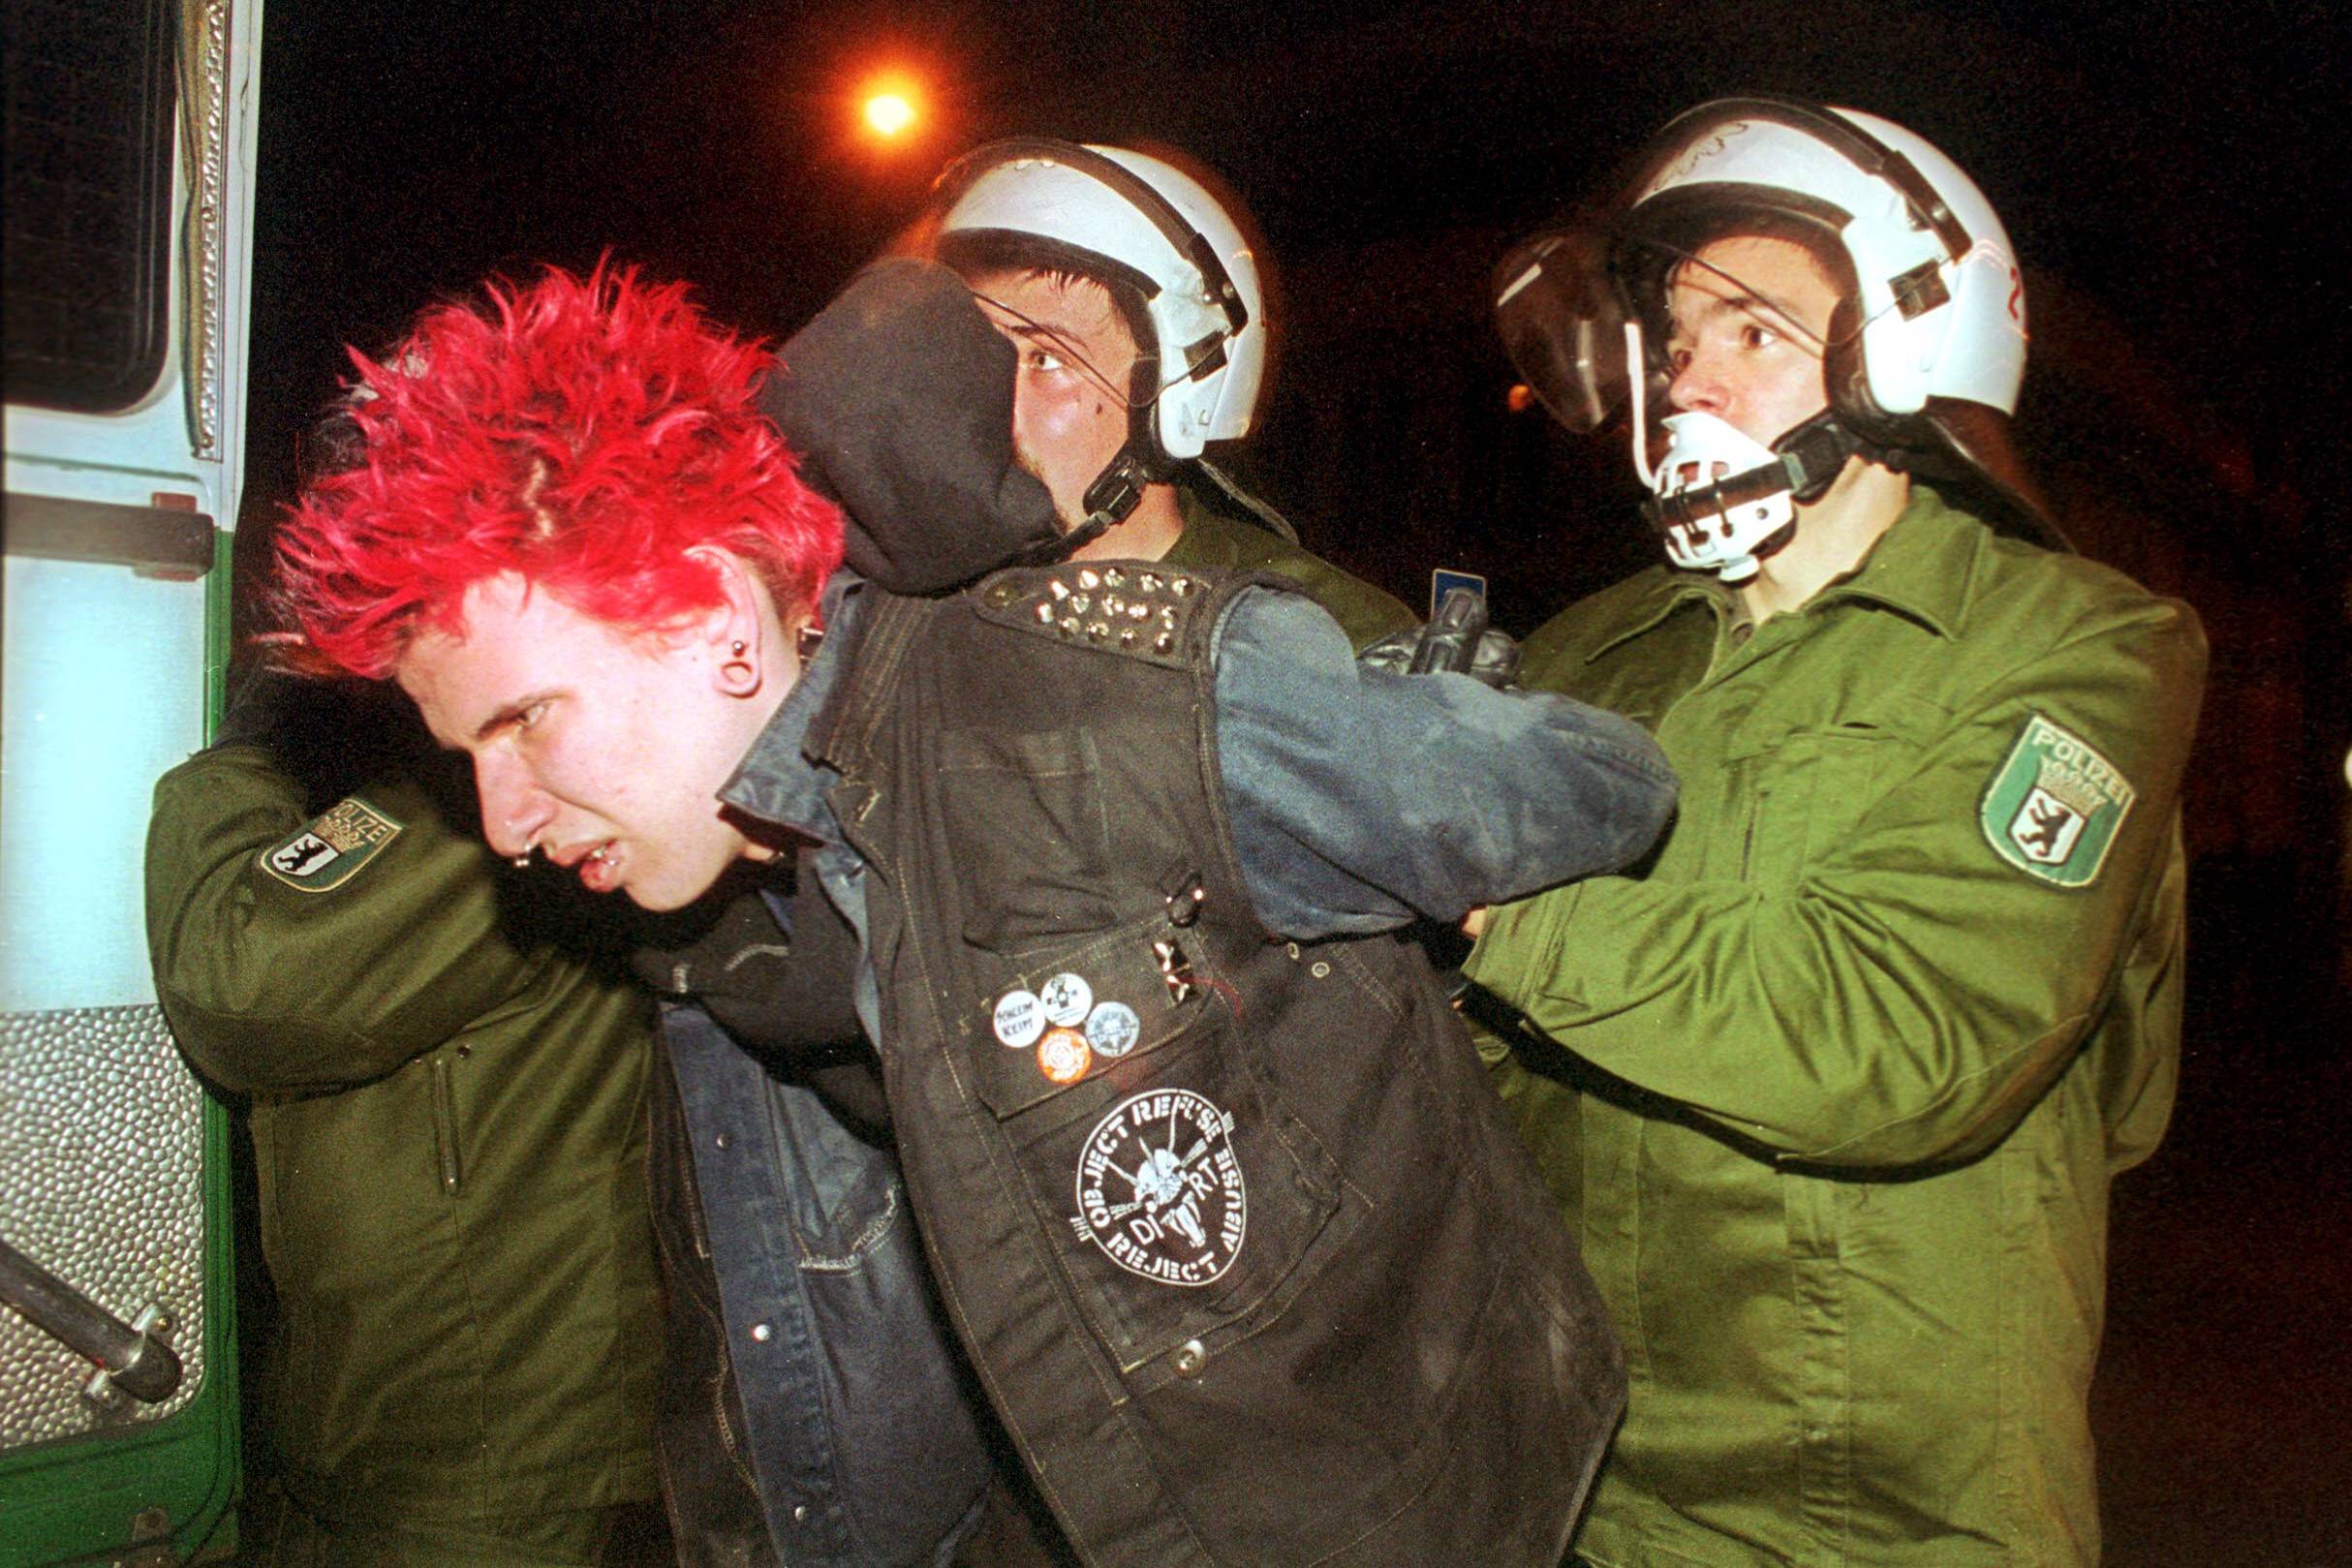 Ein Punk wird in Berlin verhaftet. Walpurgisnacht, Prenzlauer Berg.